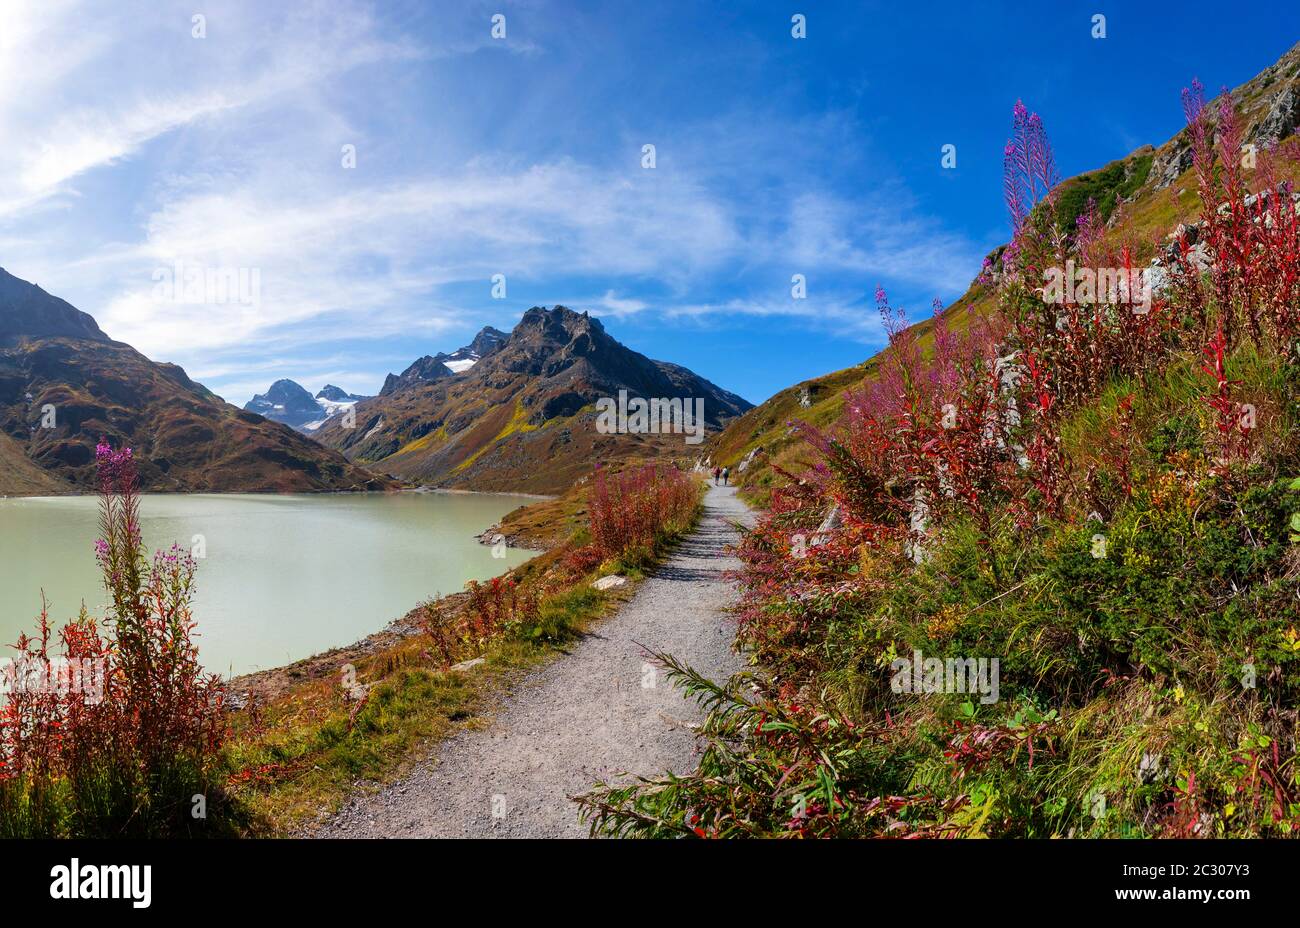 Hiking trail around the lake, Bielerhoehe, Silvrettasee, Silvretta reservoir, Silvretta Group, Vorarlberg, Austria Stock Photo